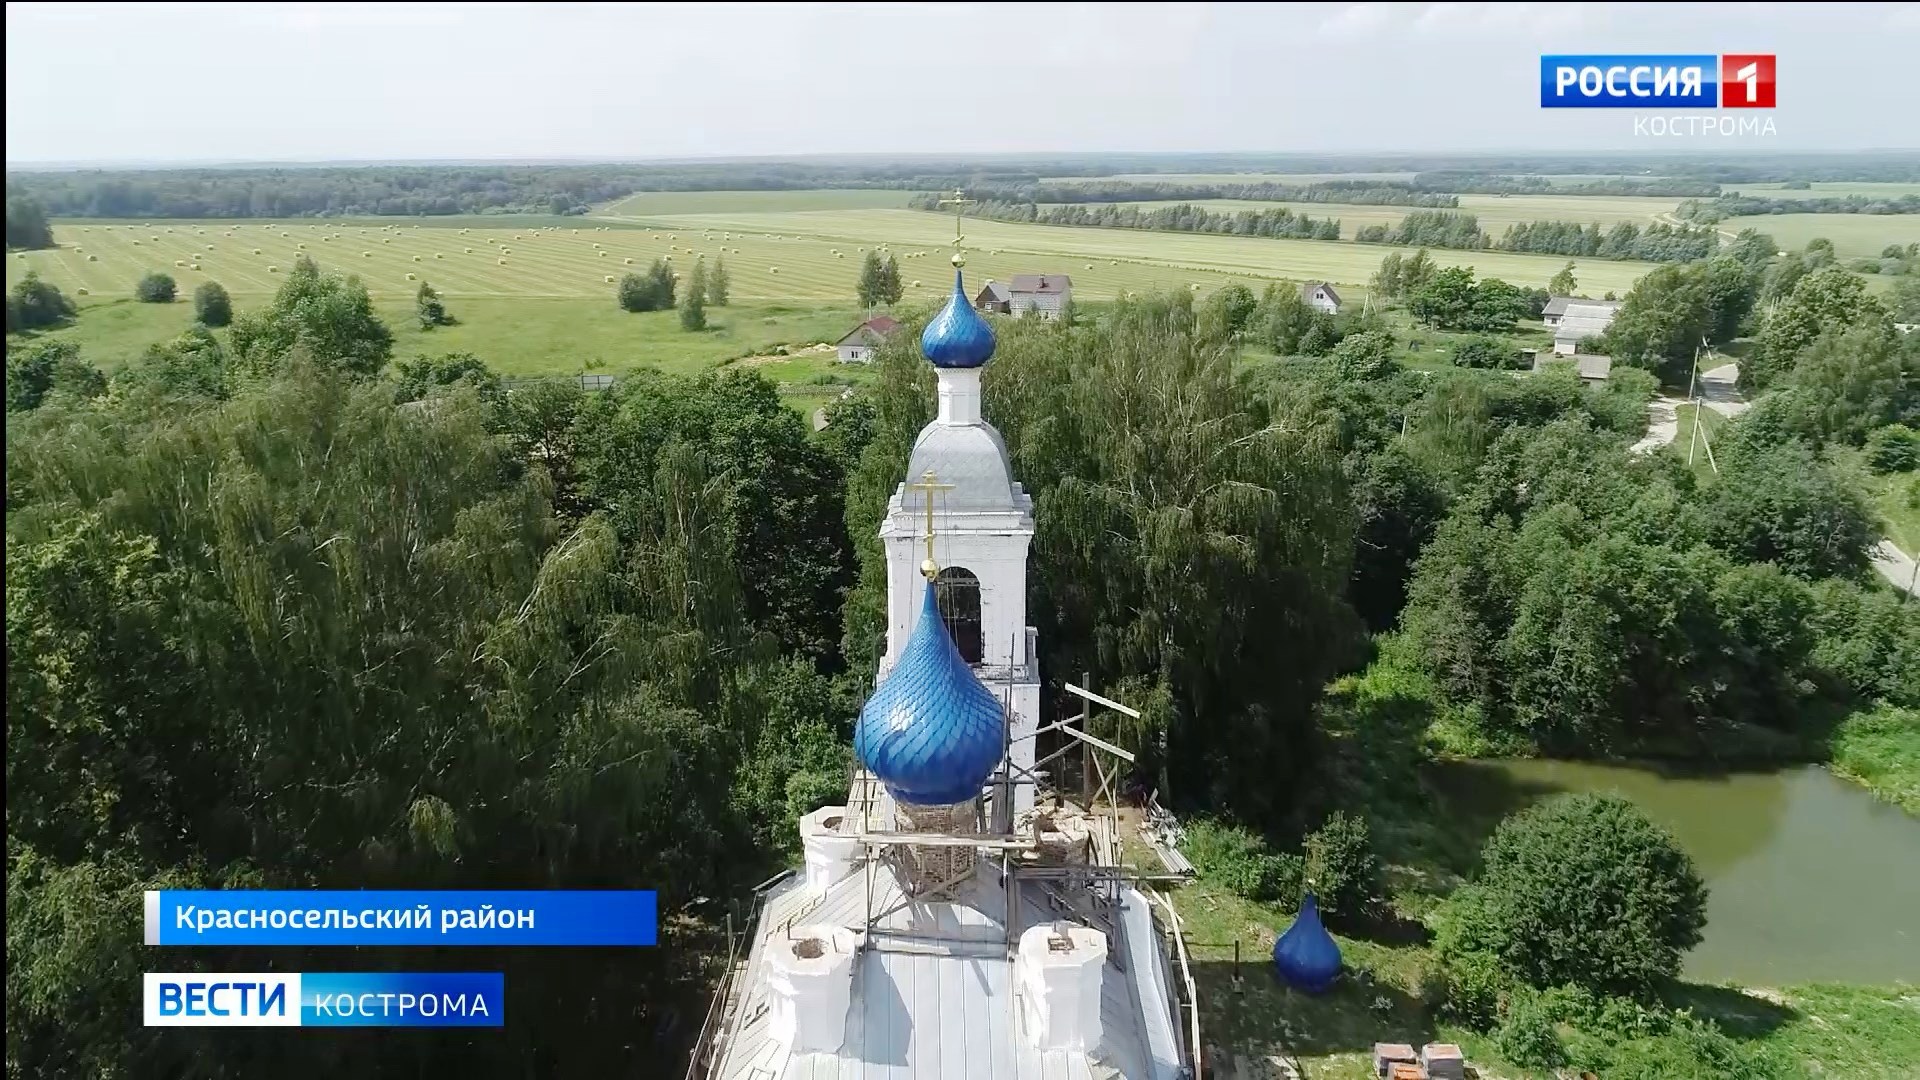 Восстановить купола храма под Костромой помог советский фильм